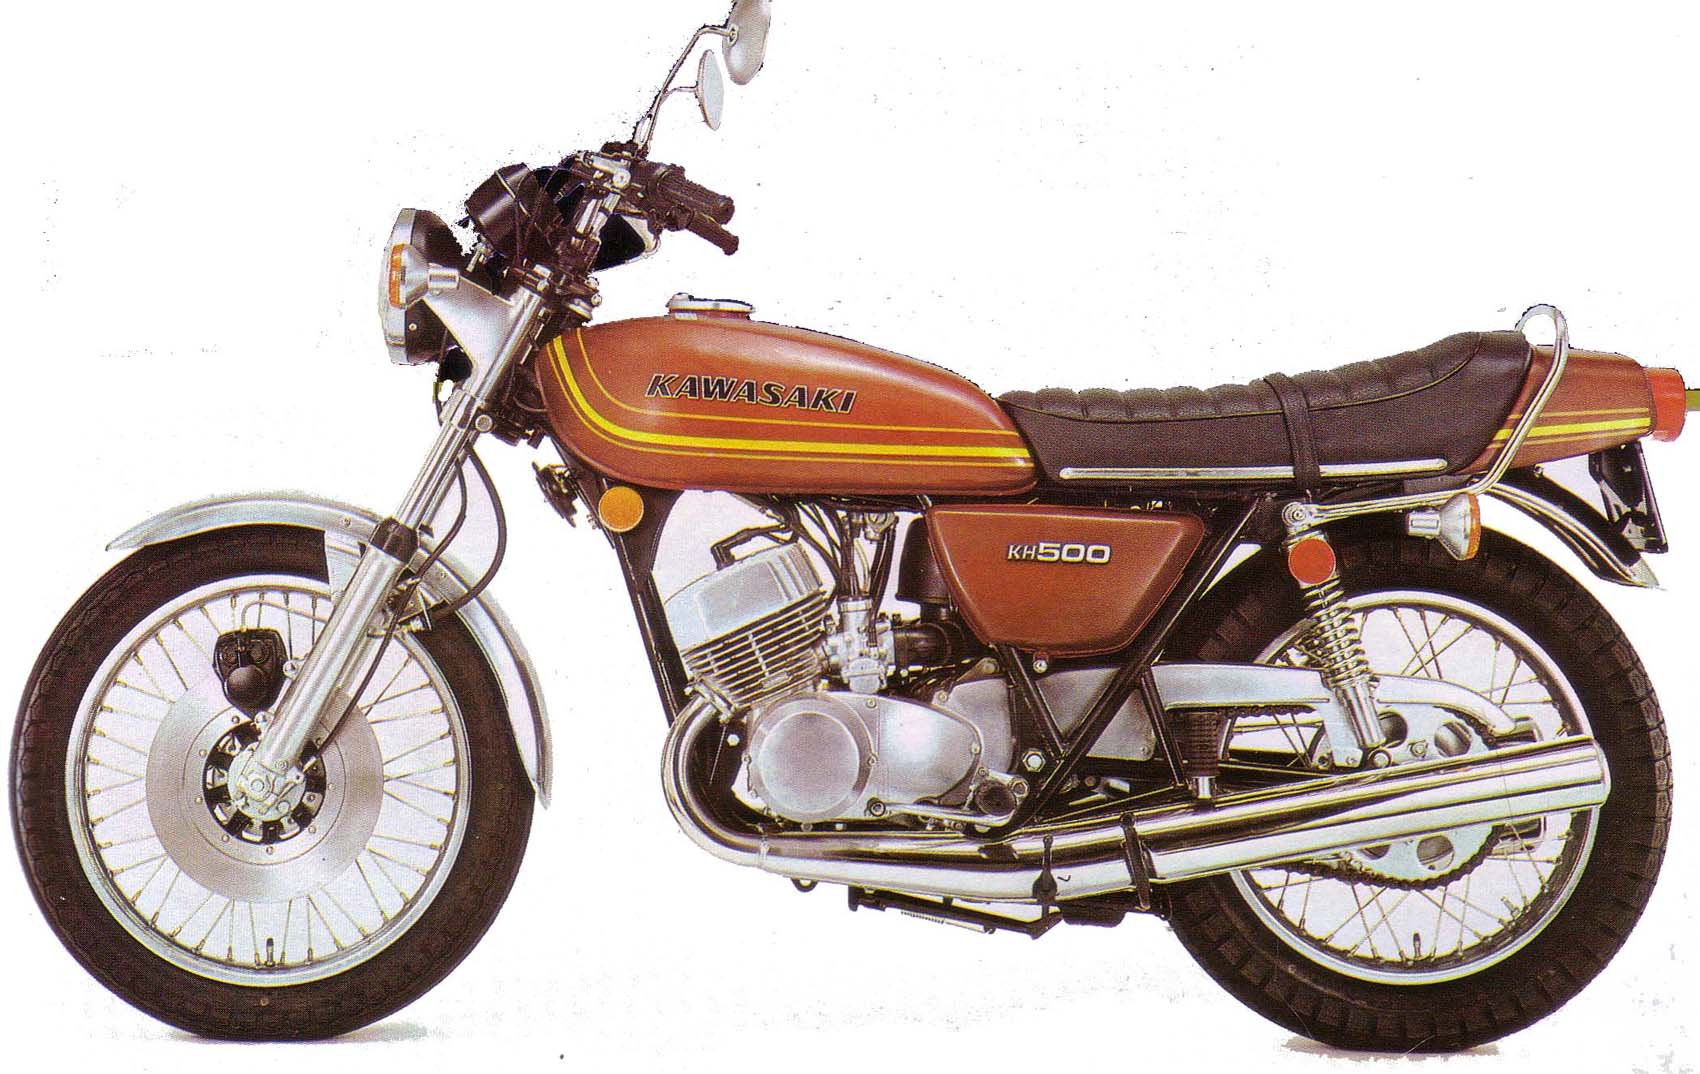 økse deltage Tilpasning Kawasaki KH 500 (1976-77) technical specifications